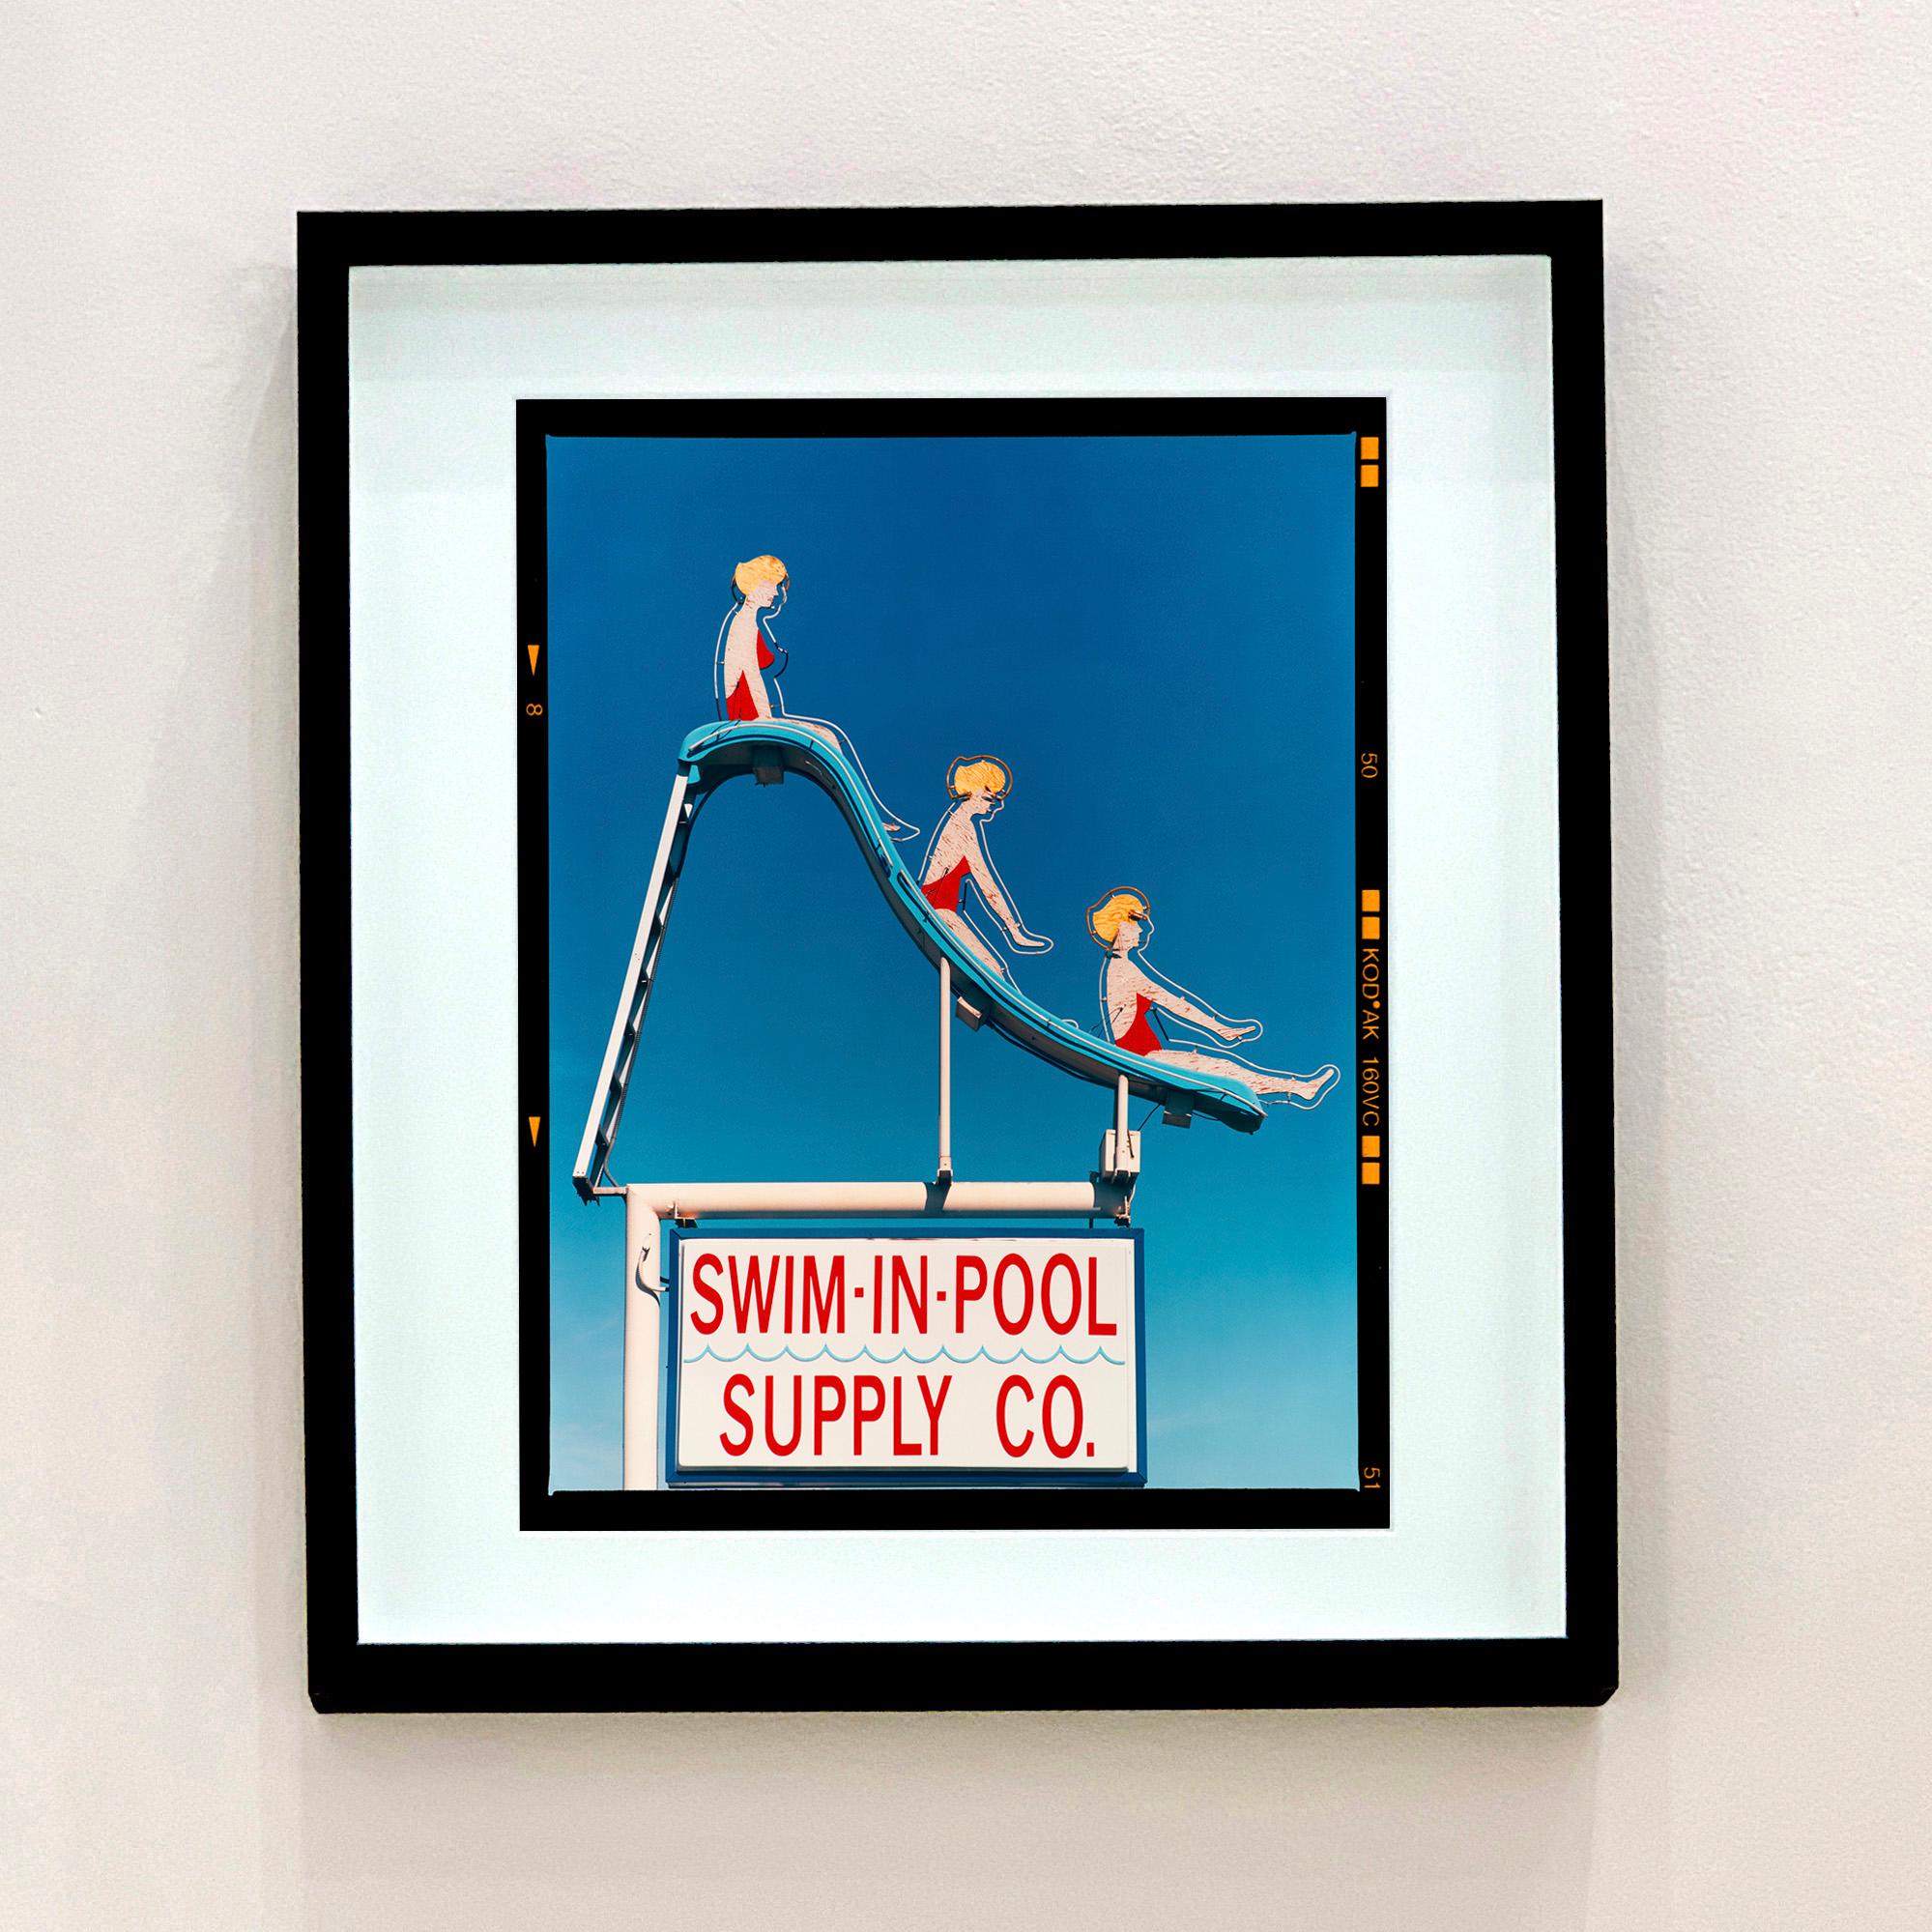 Swim-in-Pool Supply Co. Las Vegas – amerikanische Farbschildfotografie  – Print von Richard Heeps